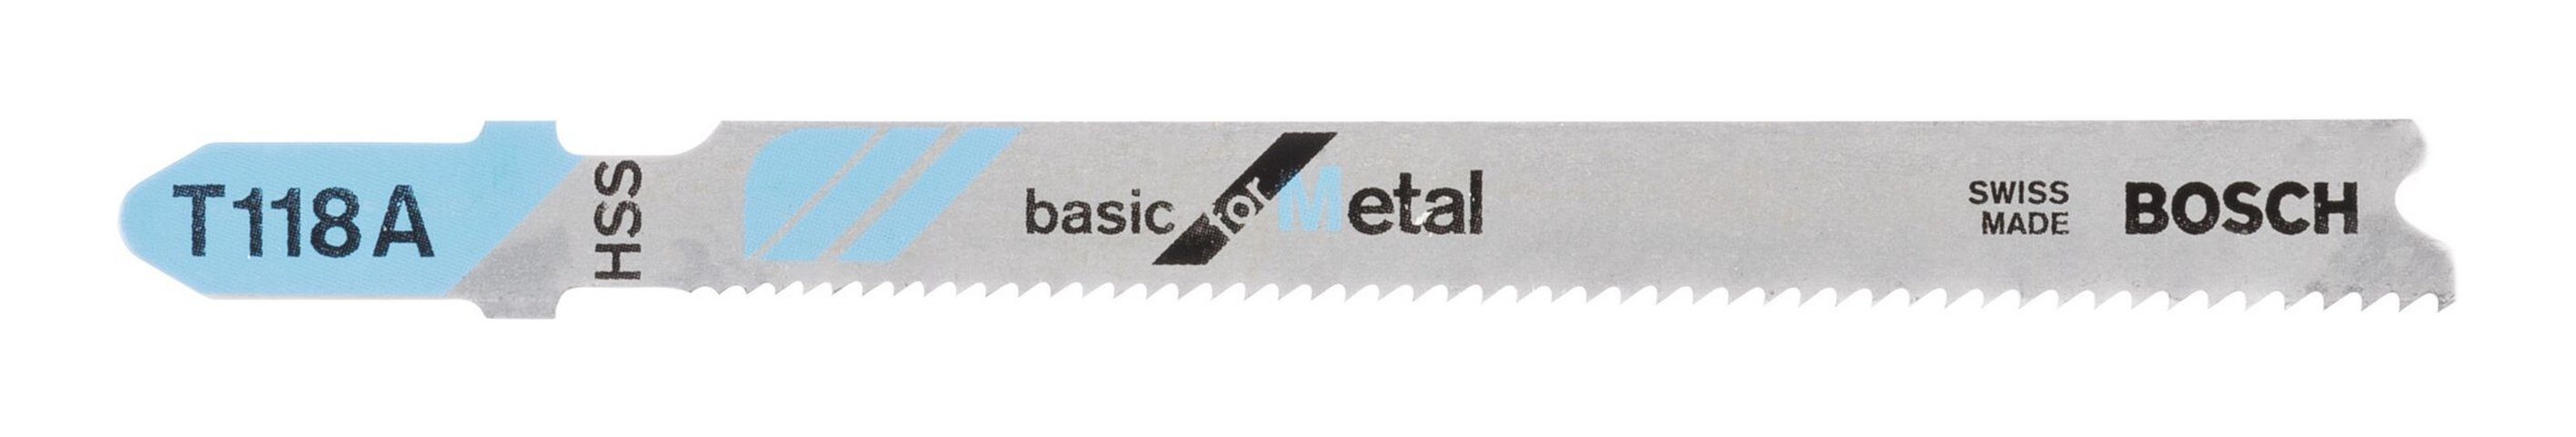 BOSCH Stichsägeblatt (100 Stück), T 118 A Basic for Metal - 100er-Pack